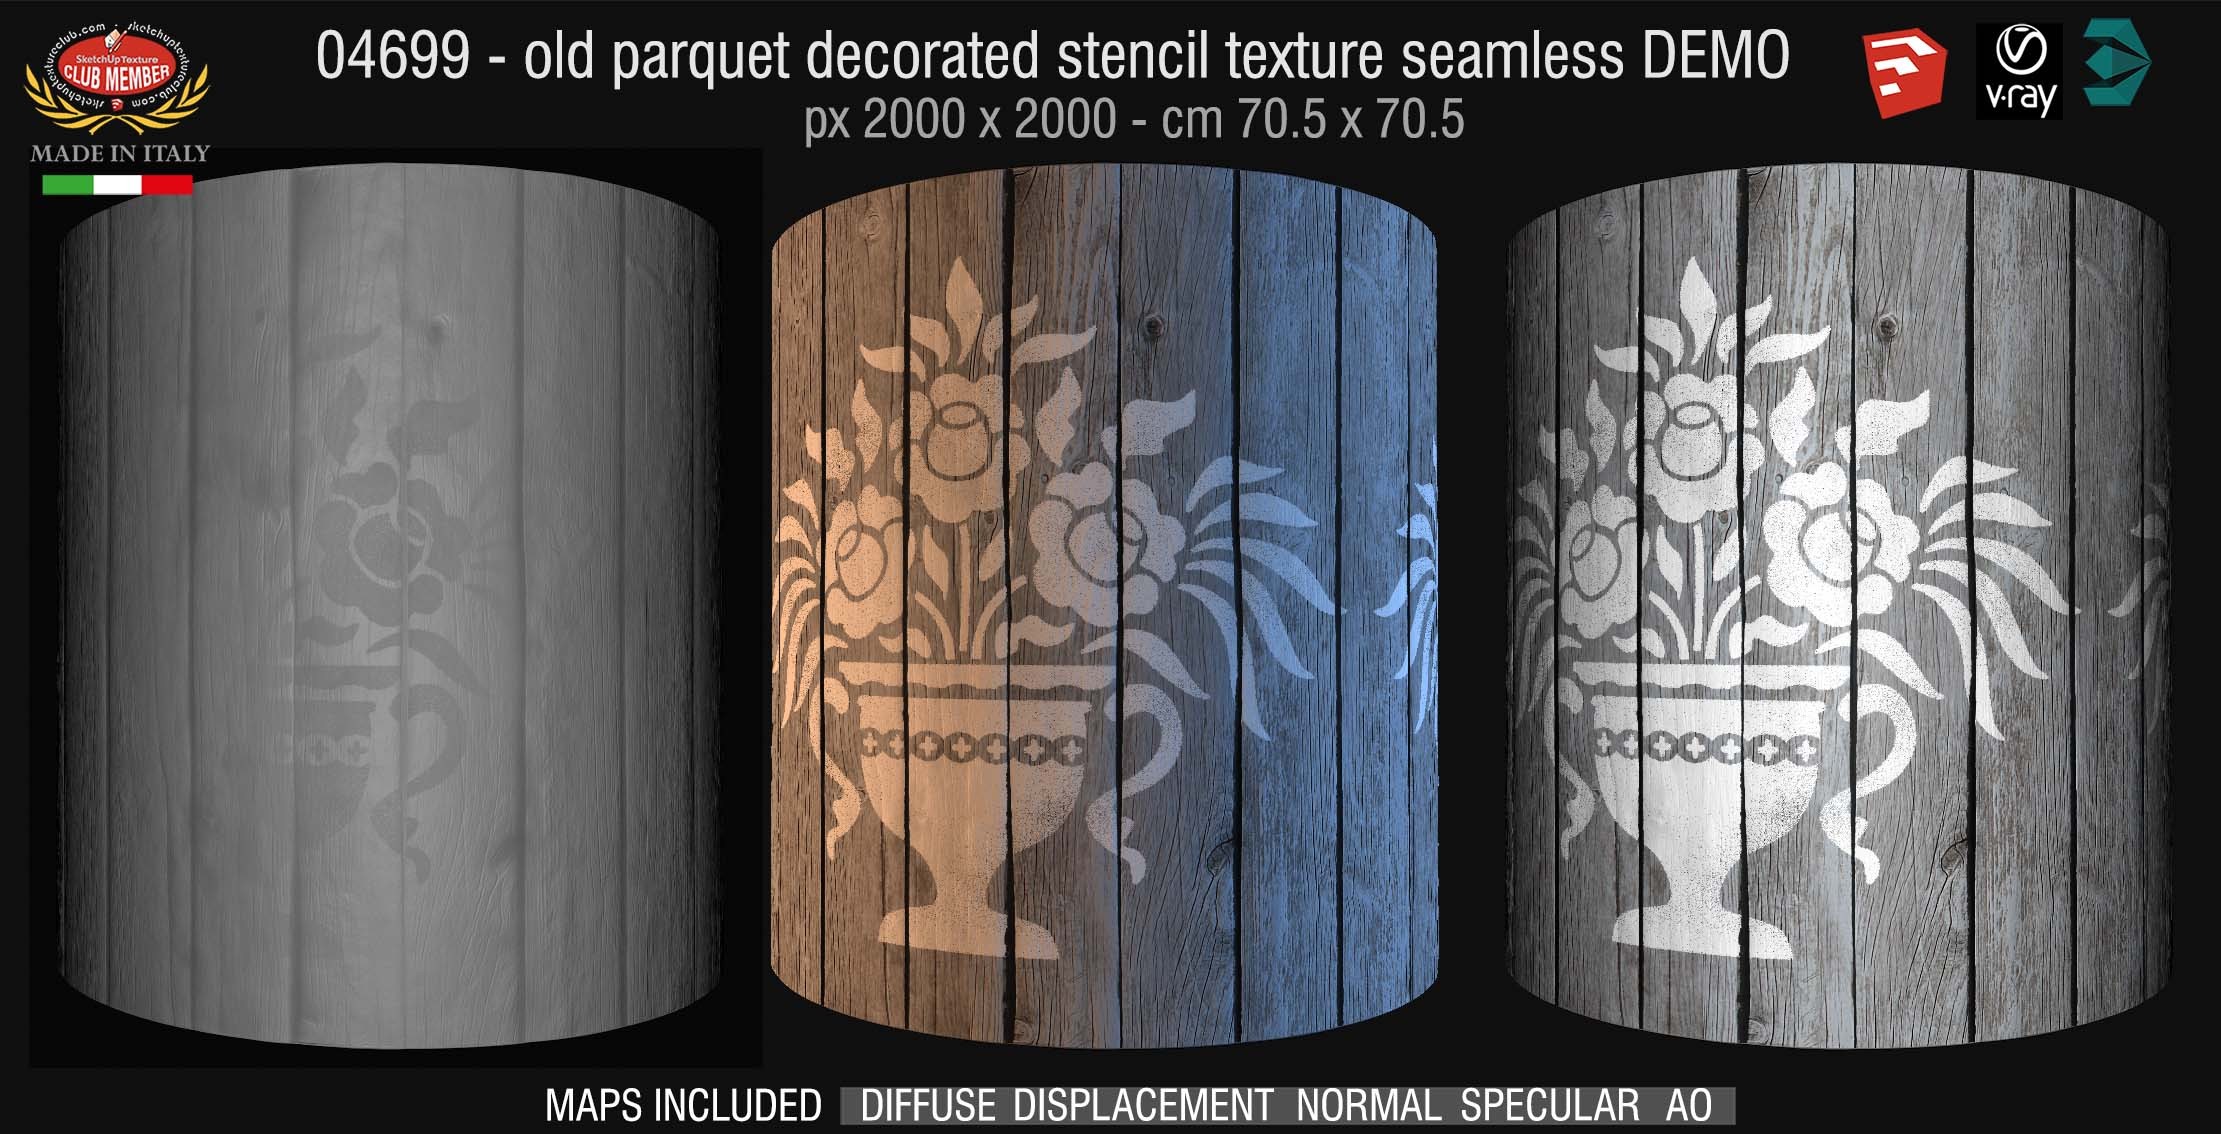 04699 HR Parquet decorated stencil texture seamless + maps DEMO